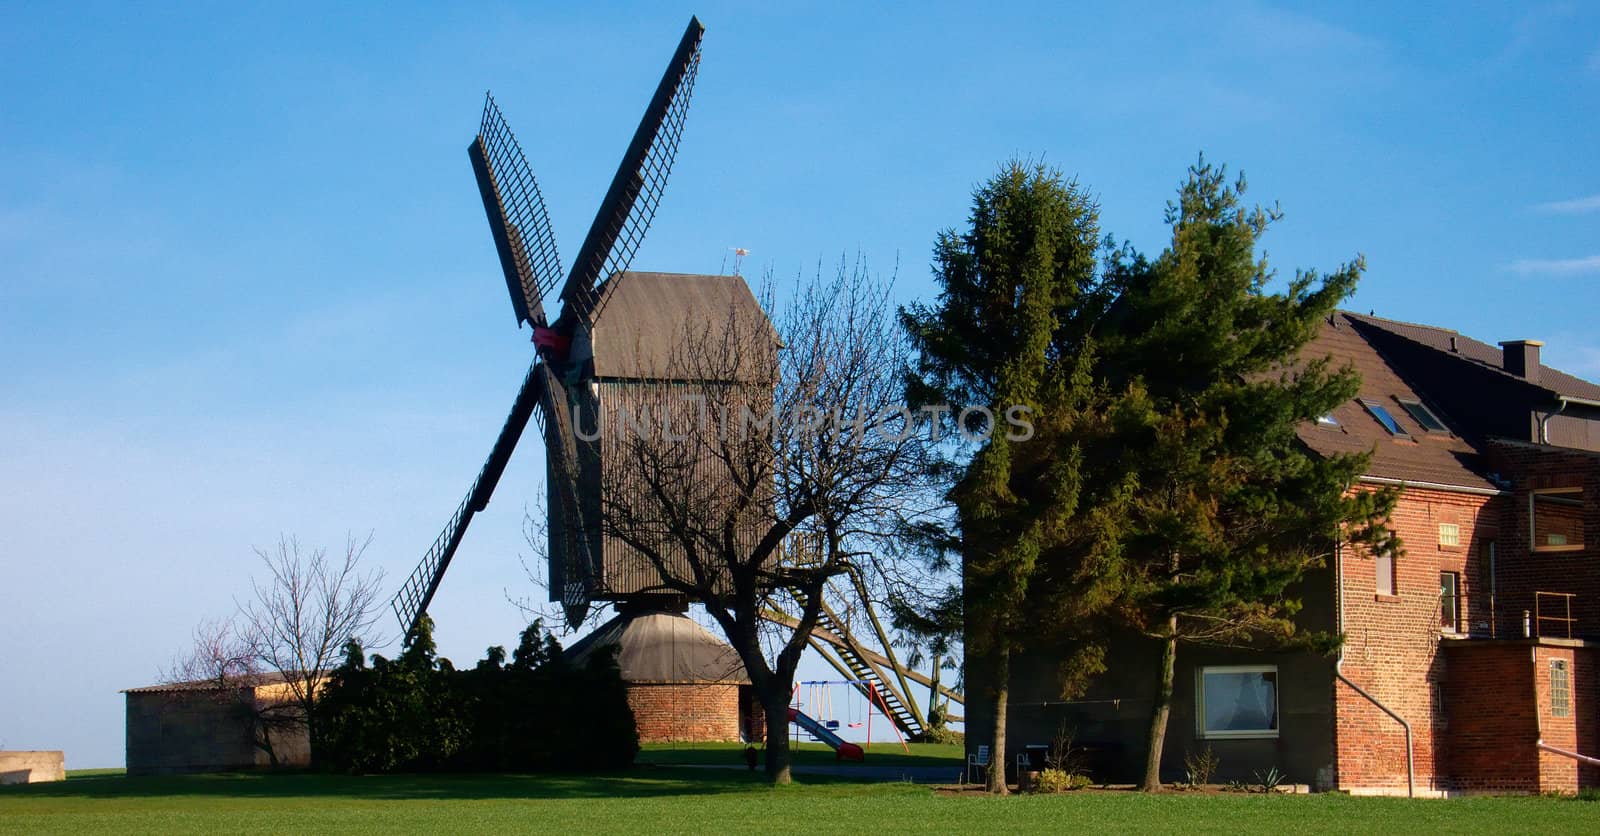 Windmill by saasemen